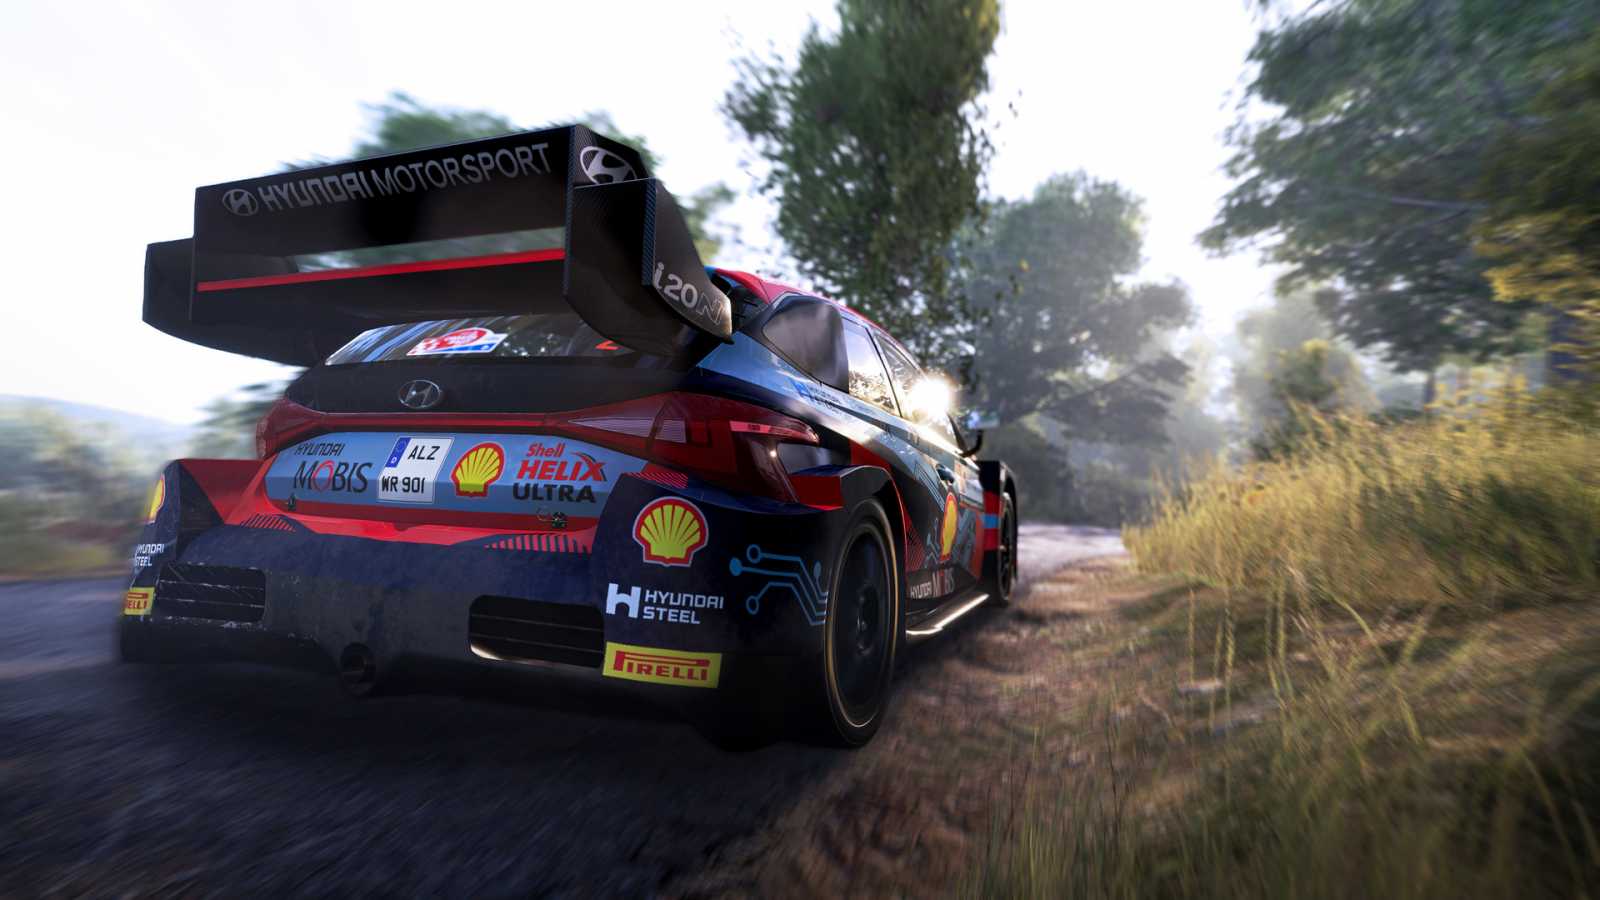 Gamescomové dojmy z WRC Generations - Francouzi, loučení a hybridy